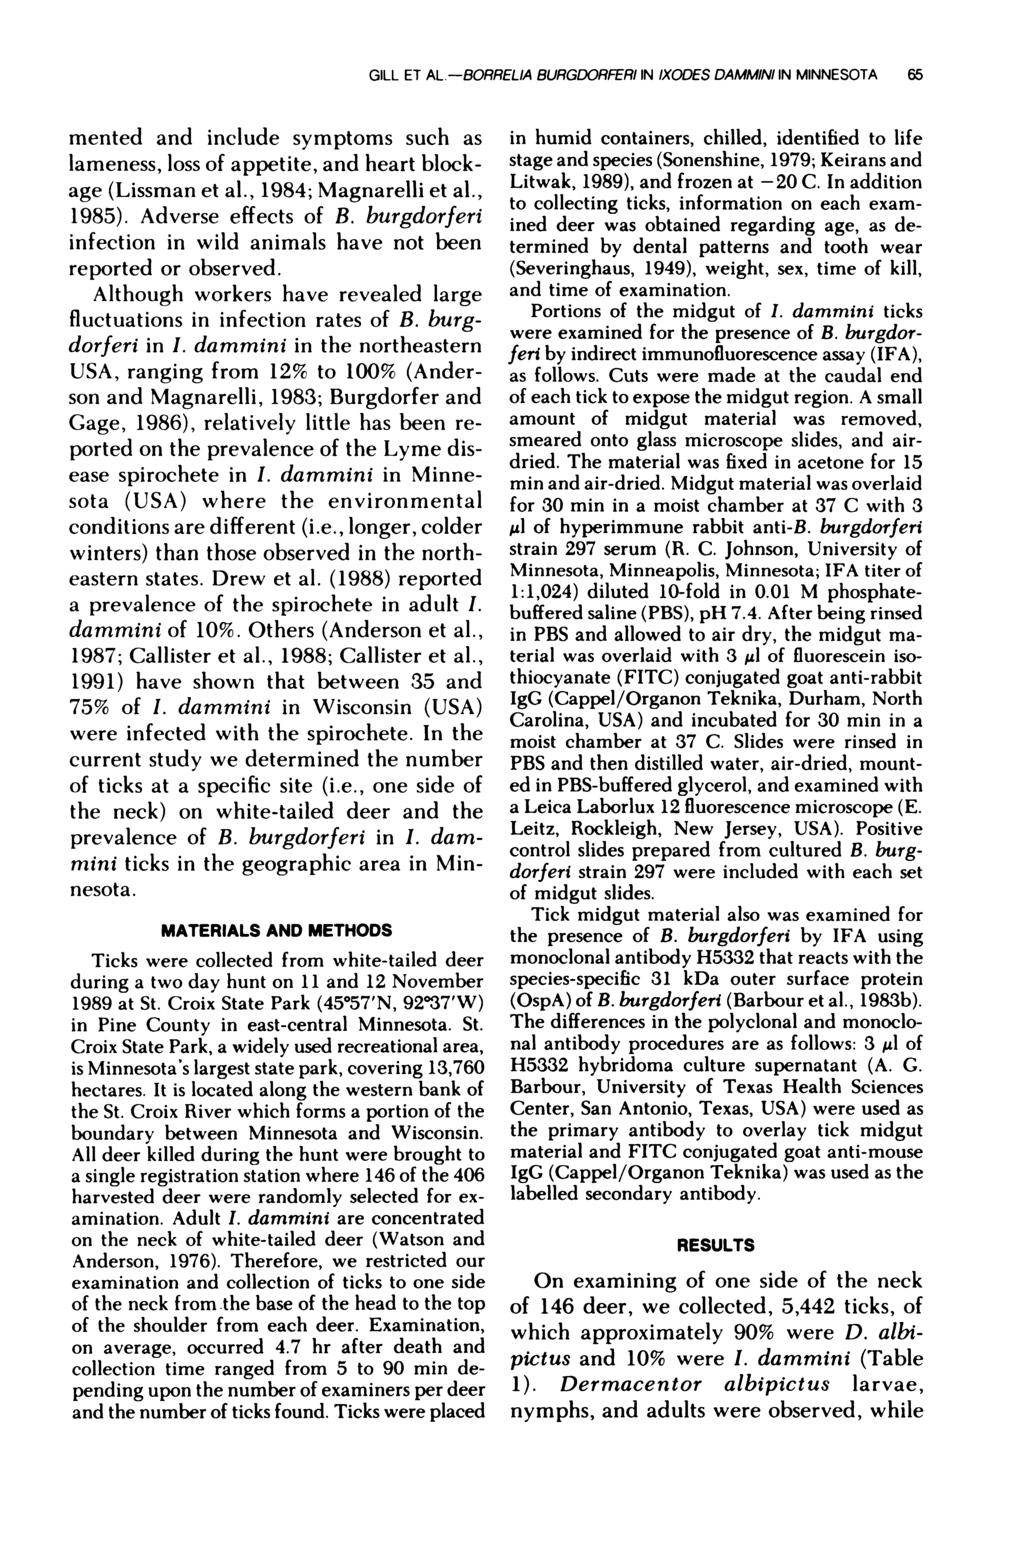 GILL ET AL.-BORRELIA BURGDORFERI IN IXODES DAMMINI IN MINNESOTA 65 mented and include symptoms such as lameness, loss of appetite, and heart blockage (Lissman et al., 1984; Magnarelli et a!., 1985).